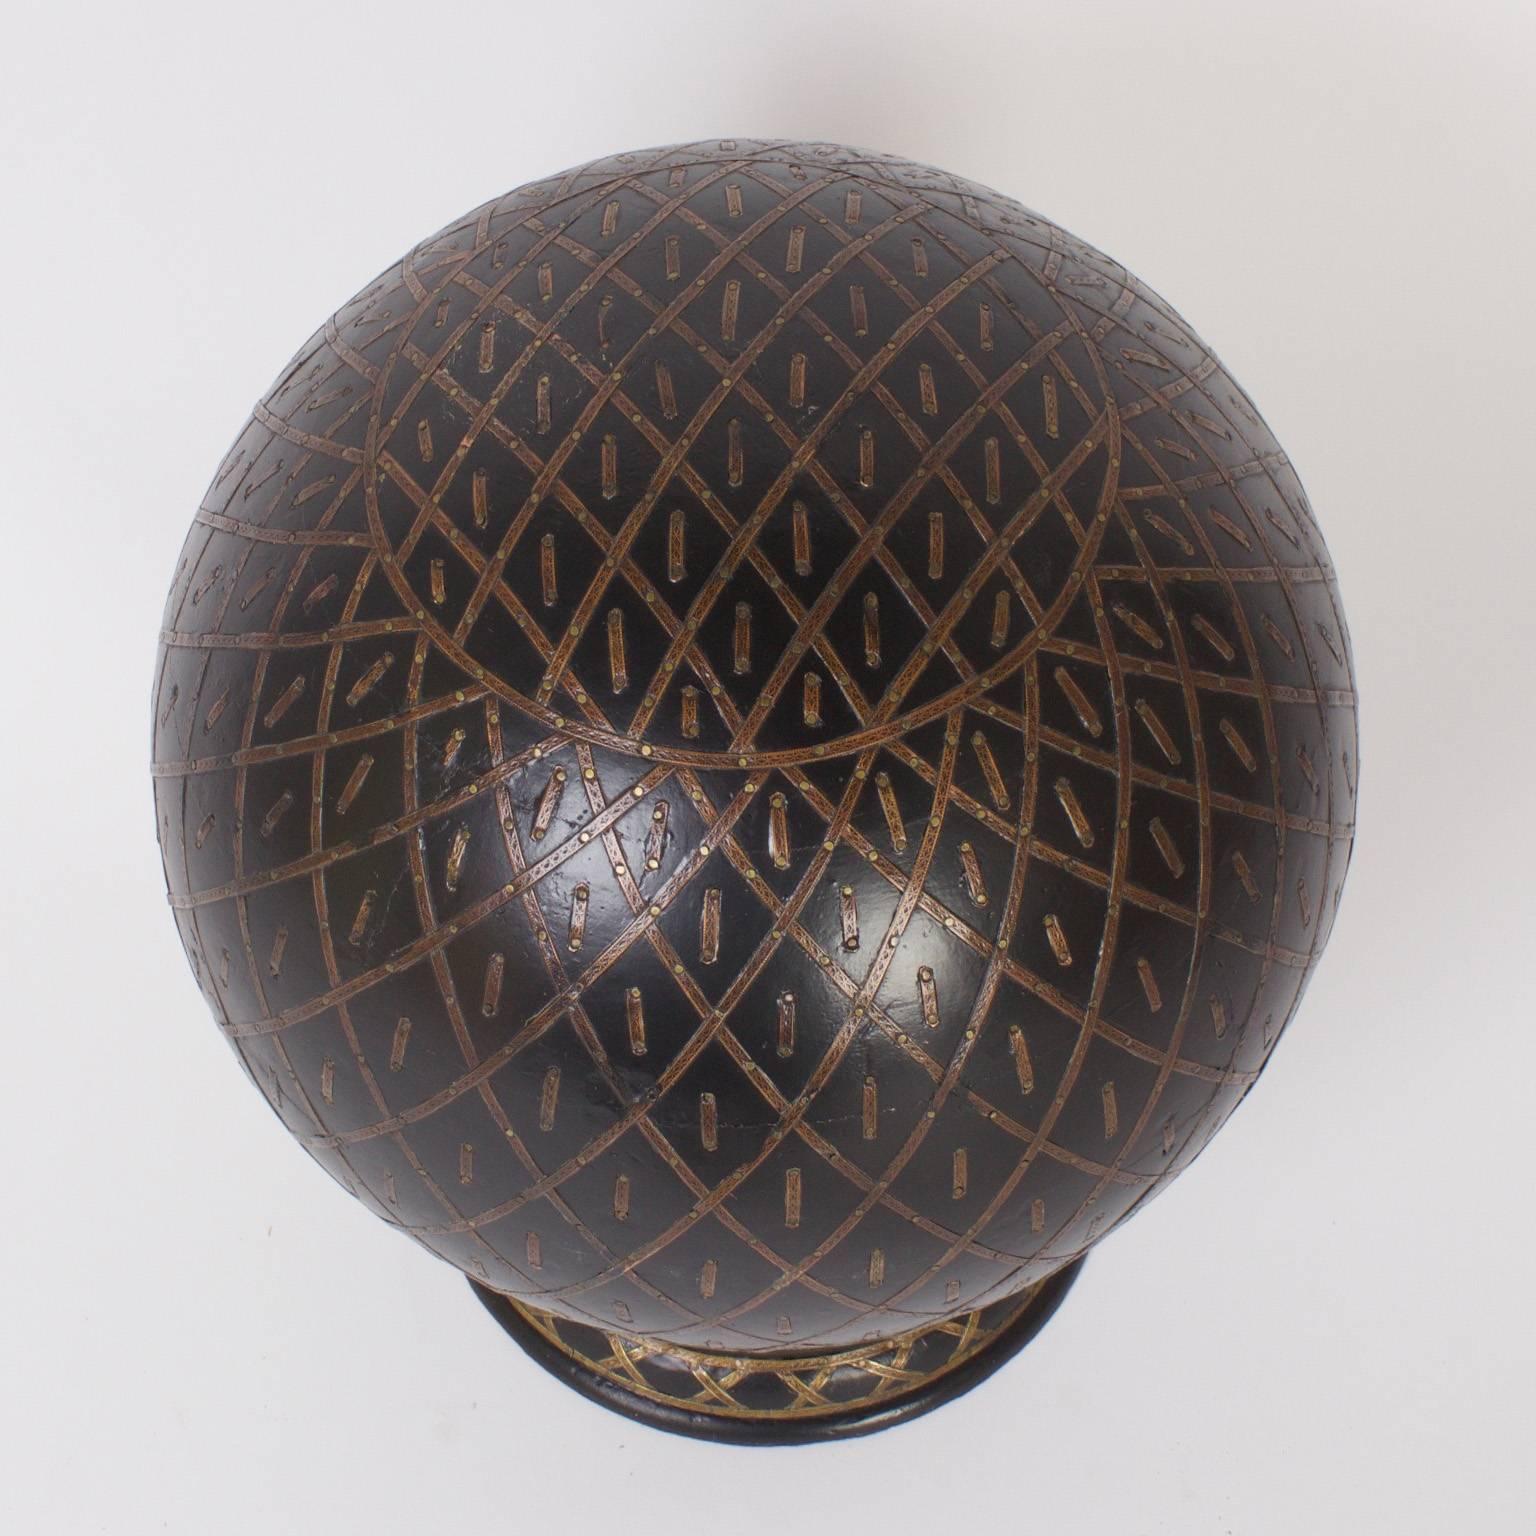 Inhabituel globe ou orbe anglo-indien vintage fabriqué en bois ébénisé et décoré d'un motif peint élaboré et bien pensé. Présenté sur un support classique en laiton.
  